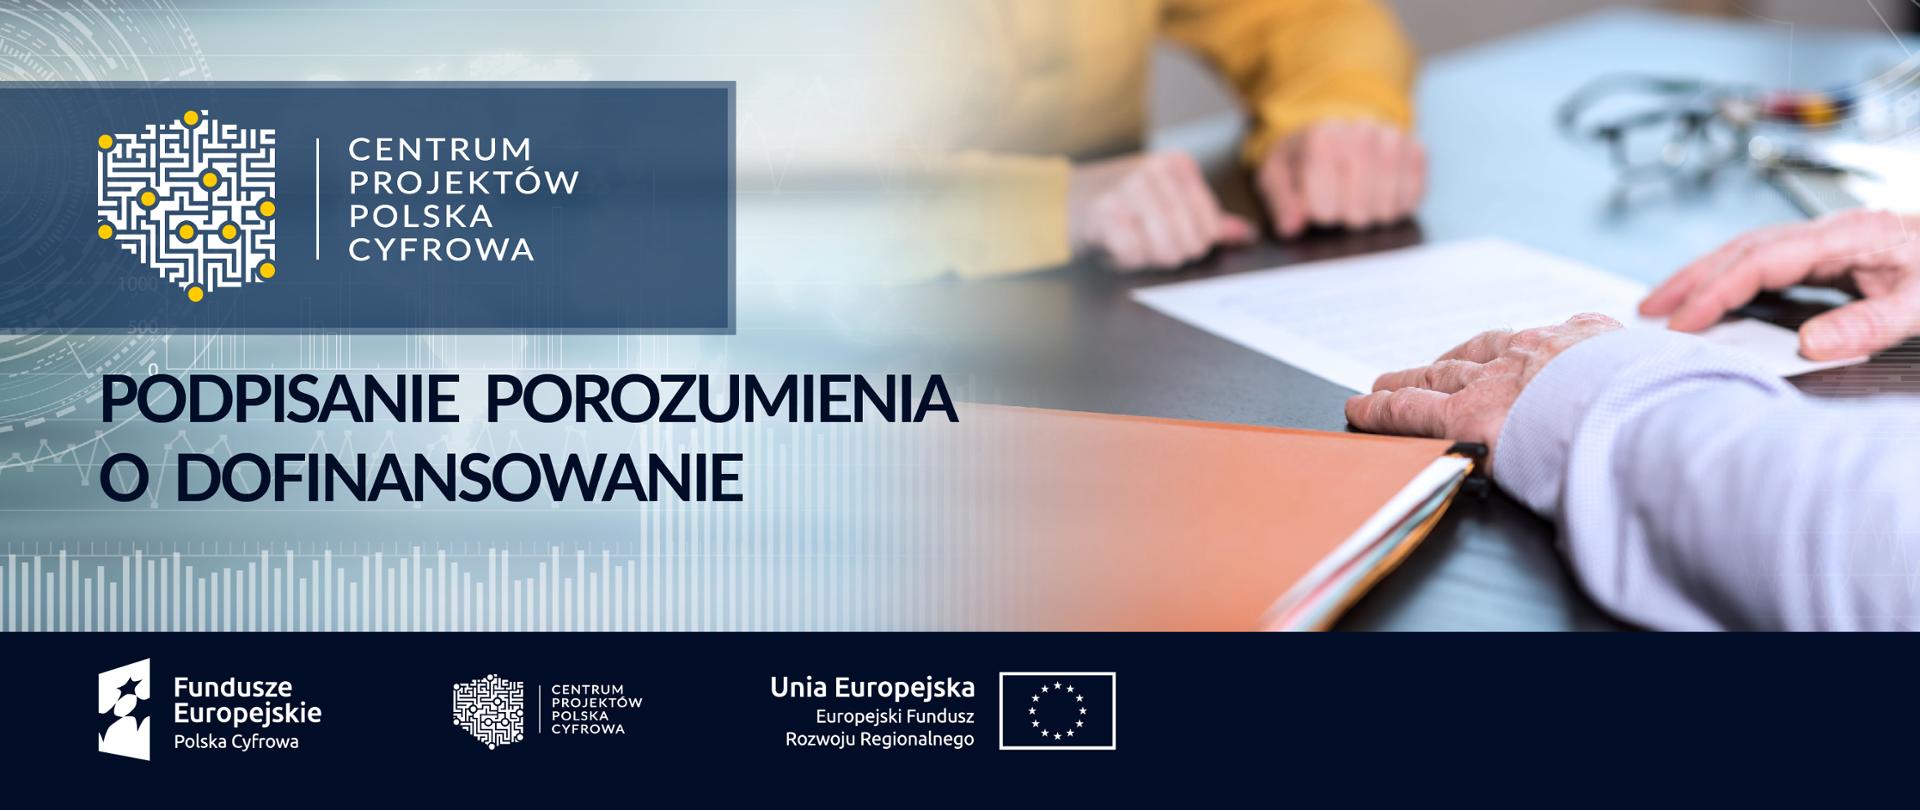 Baner: Podpisanie porozumienia o dofinansowanie. Logociąg: Fundusze Europejskie Polska Cyfrowa, Centrum Projektów Polska Cyfrowa oraz Unia Europejska Europejski Fundusz Rozwoju Regionalnego.